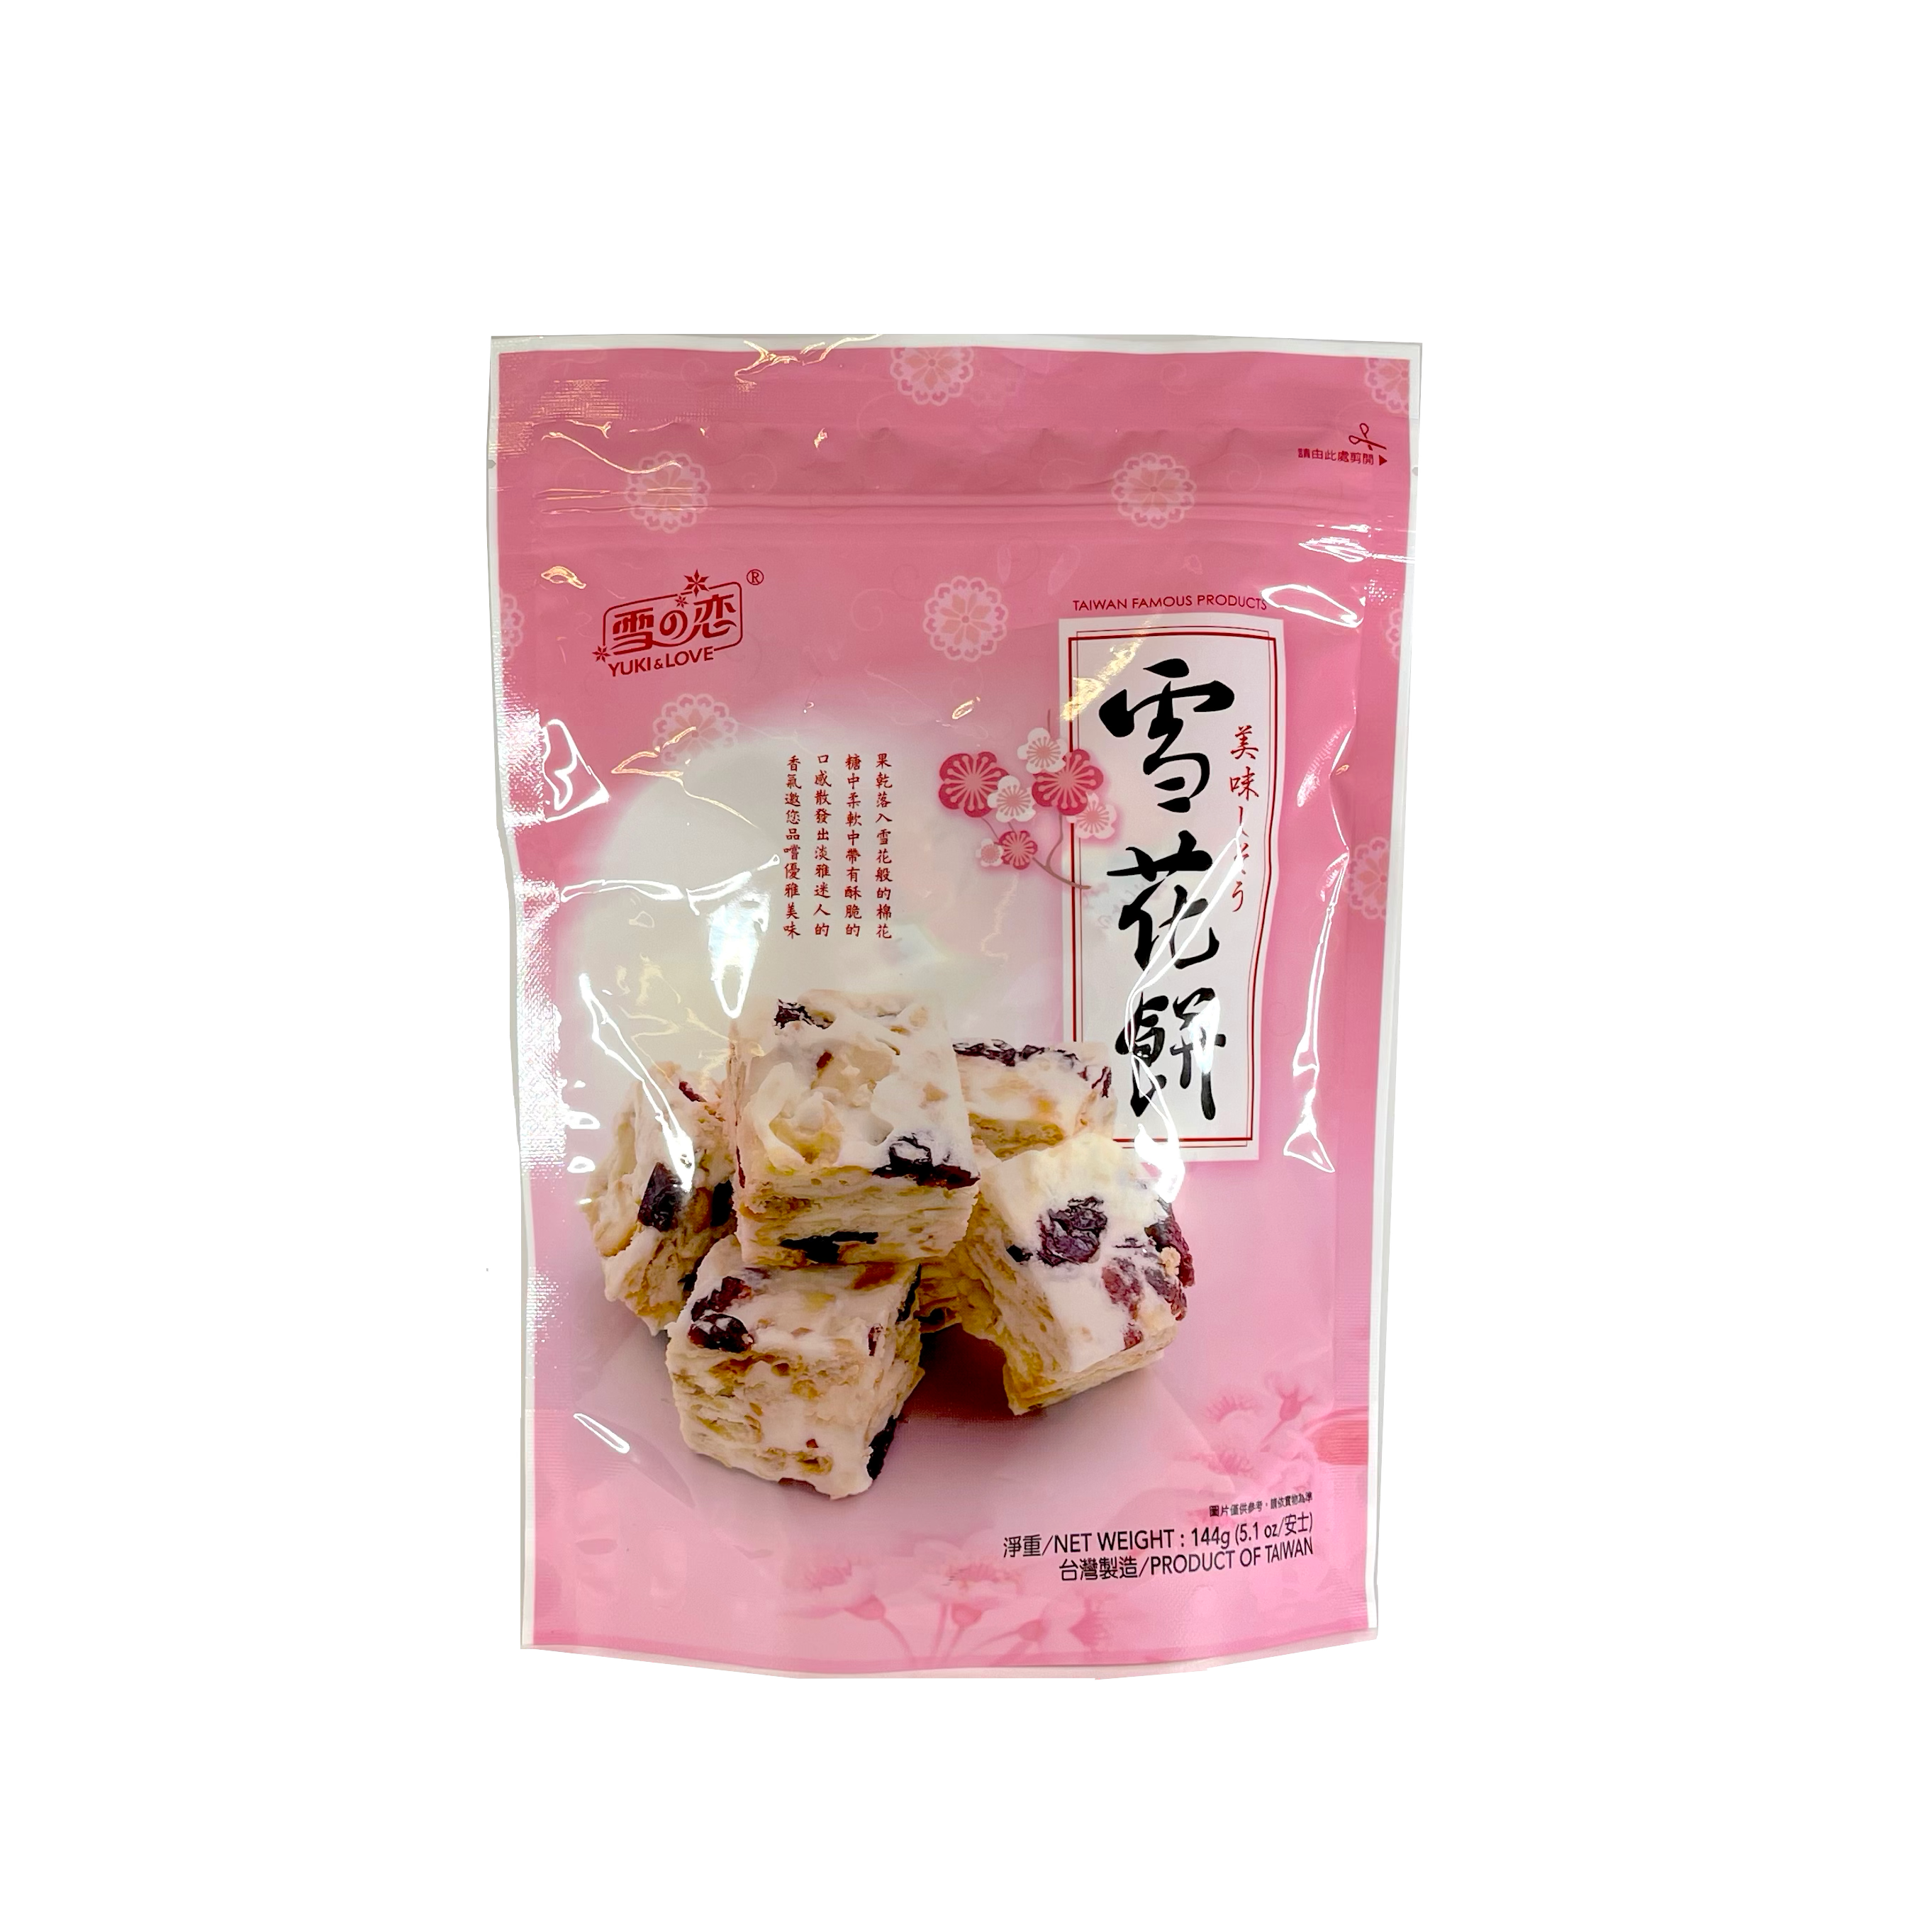 Snacks Tranbär 144g Yuki&Love Taiwan